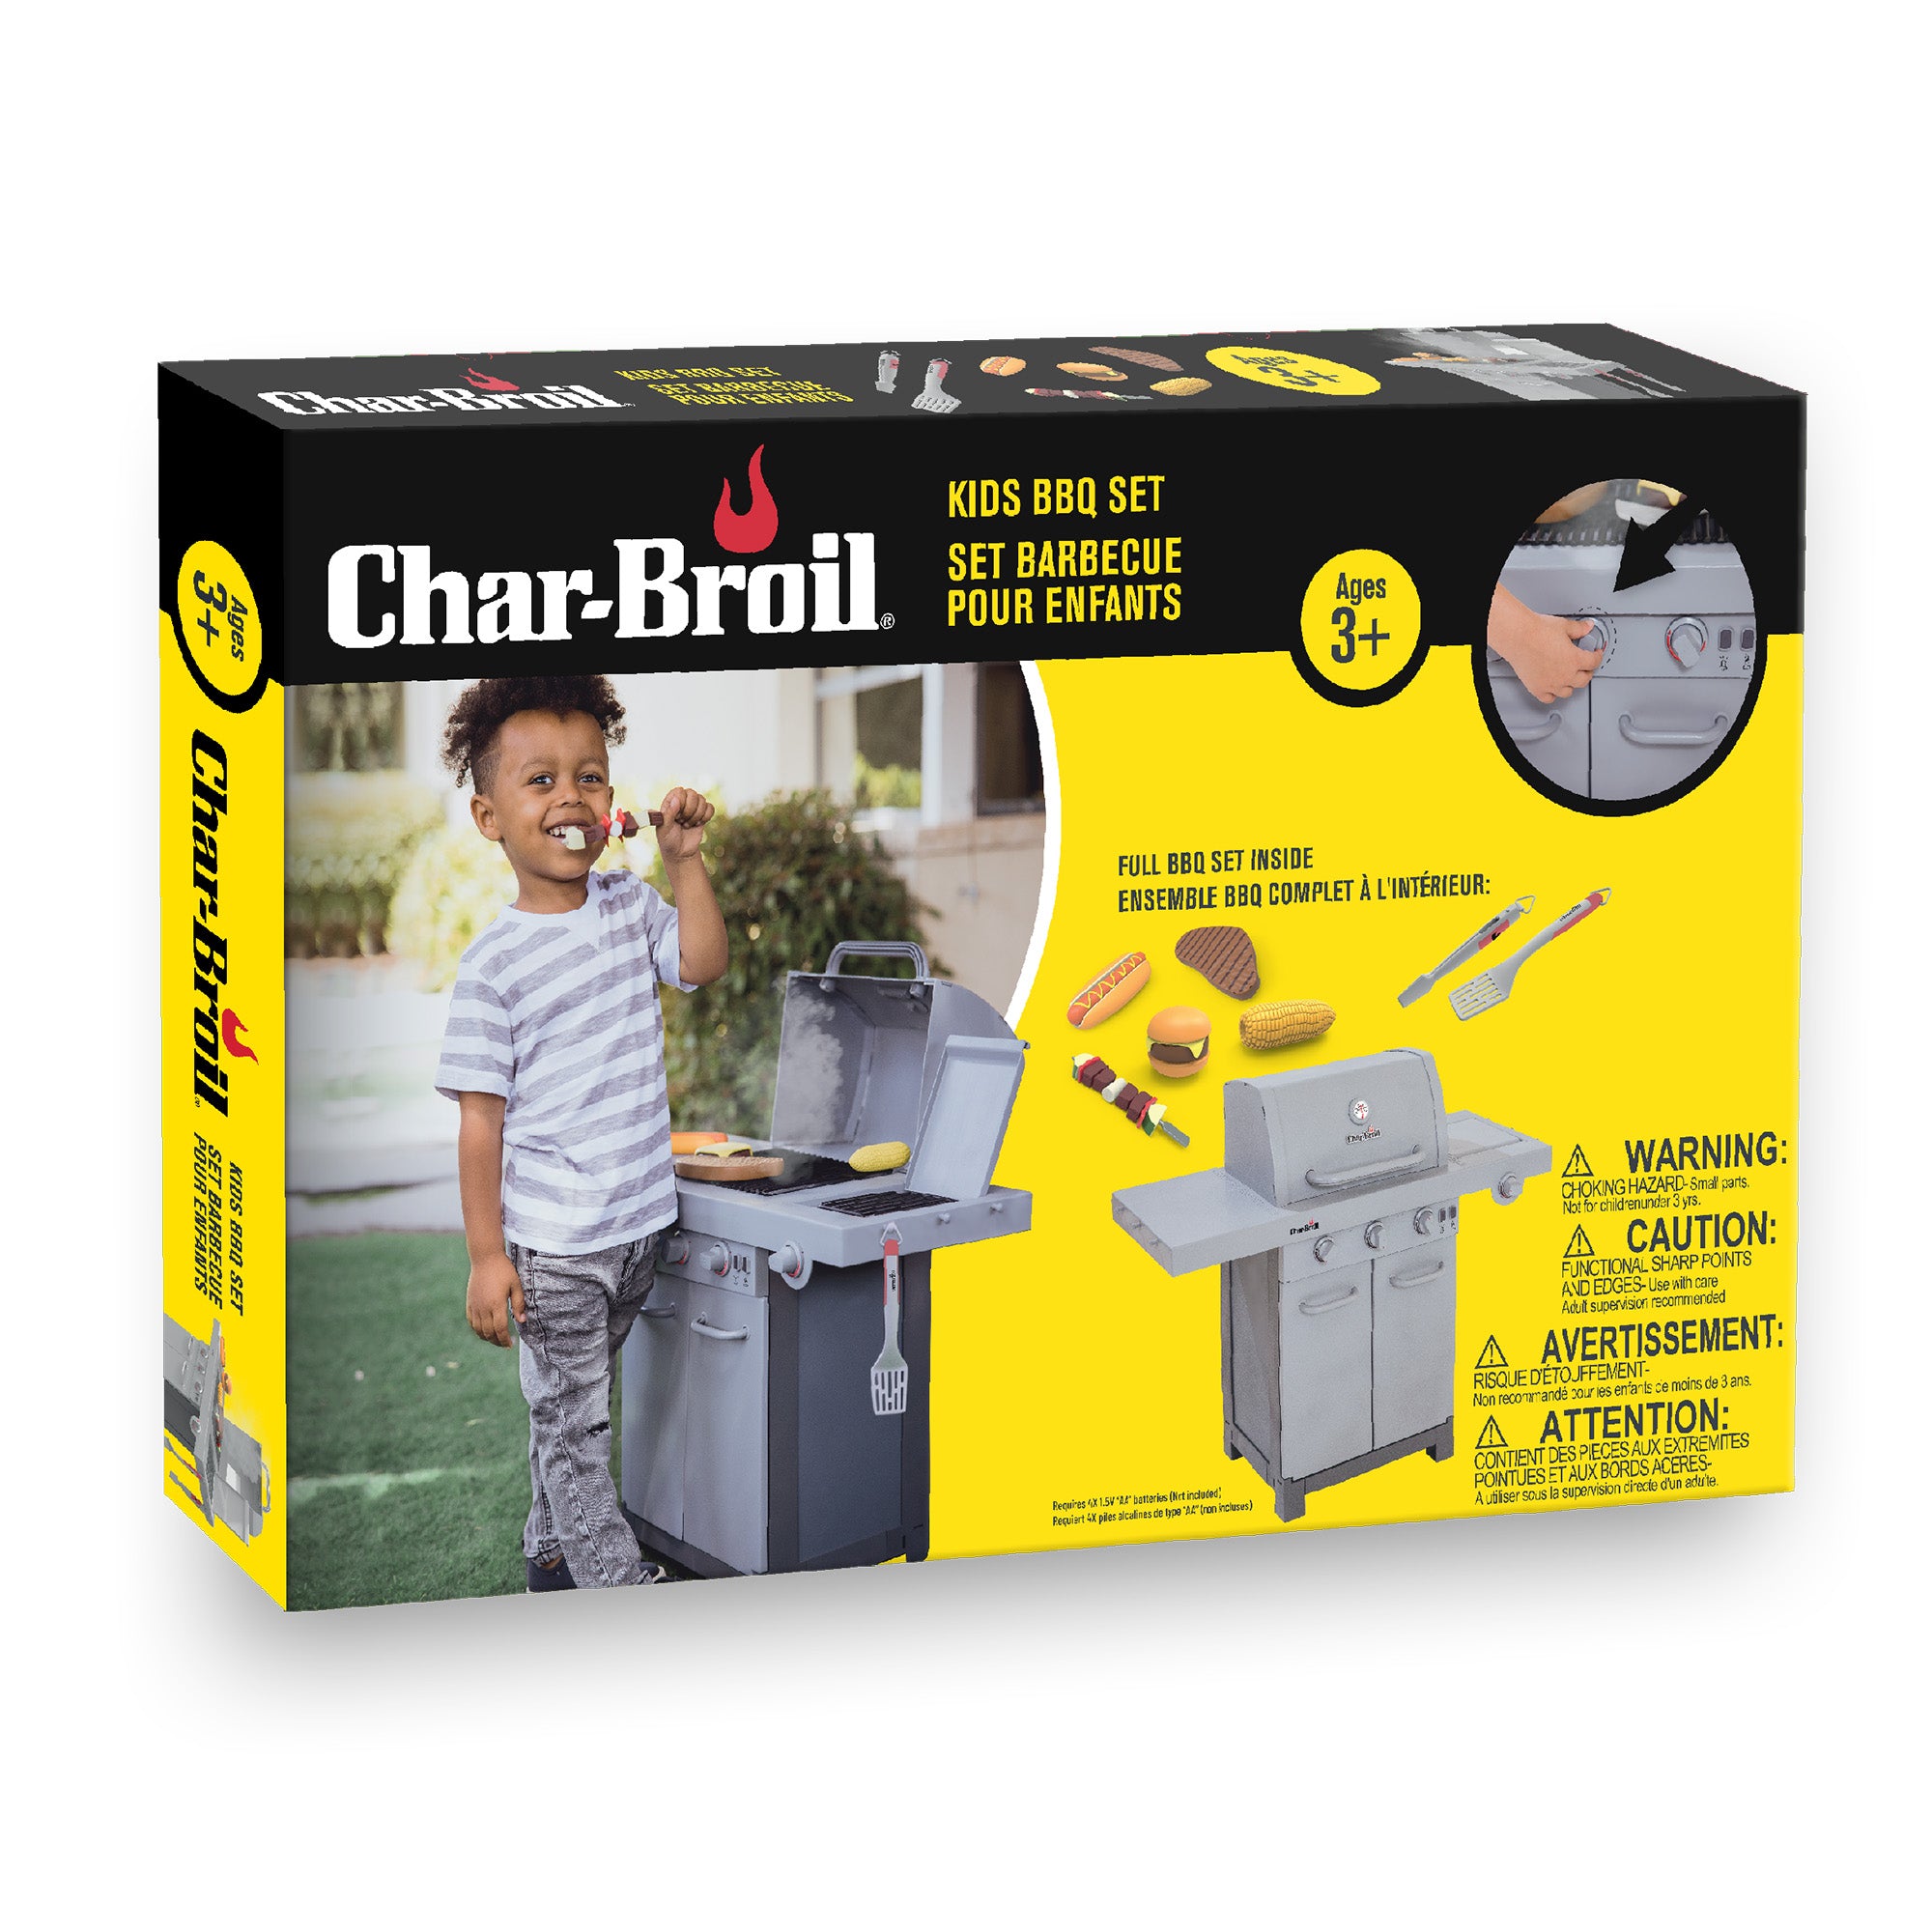 Char-Broil Kid BBQ SET